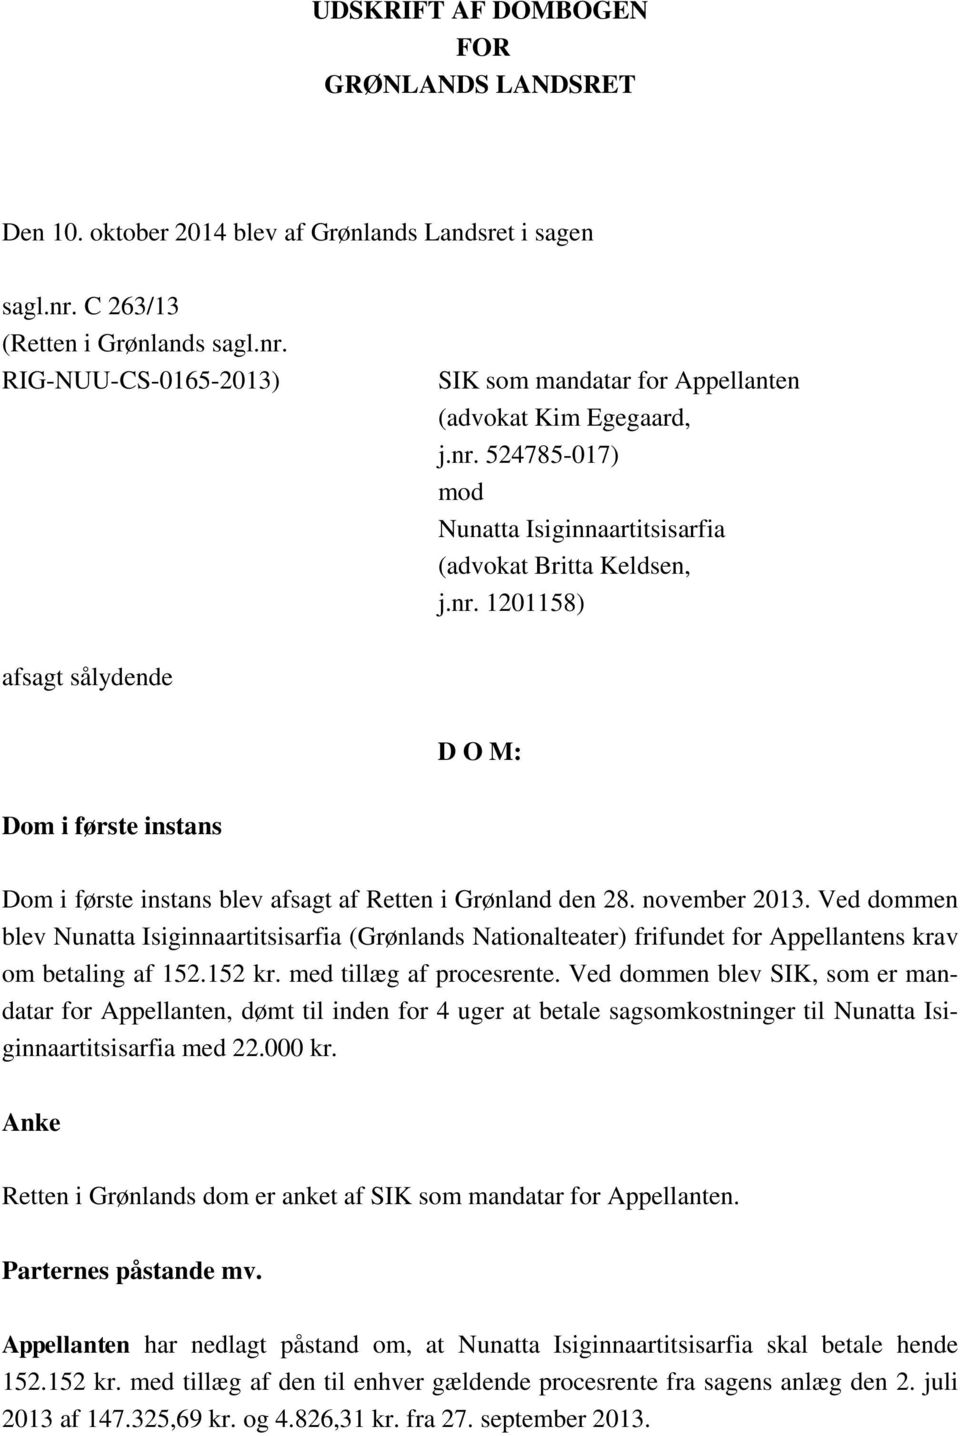 november 2013. Ved dommen blev Nunatta Isiginnaartitsisarfia (Grønlands Nationalteater) frifundet for Appellantens krav om betaling af 152.152 kr. med tillæg af procesrente.